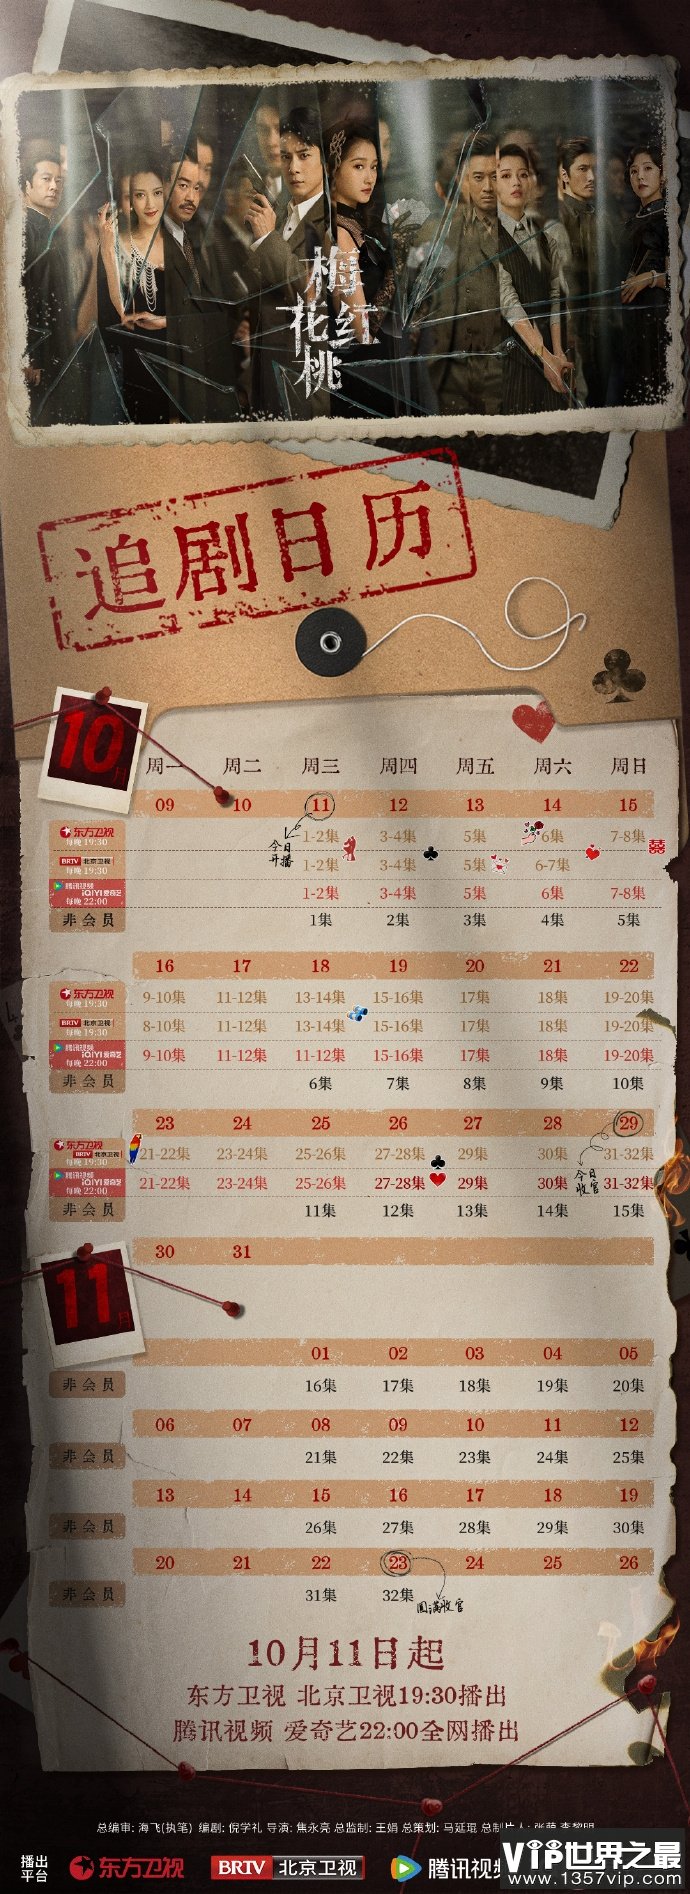 《梅花红桃》追剧日历 《梅花红桃》更新时间表